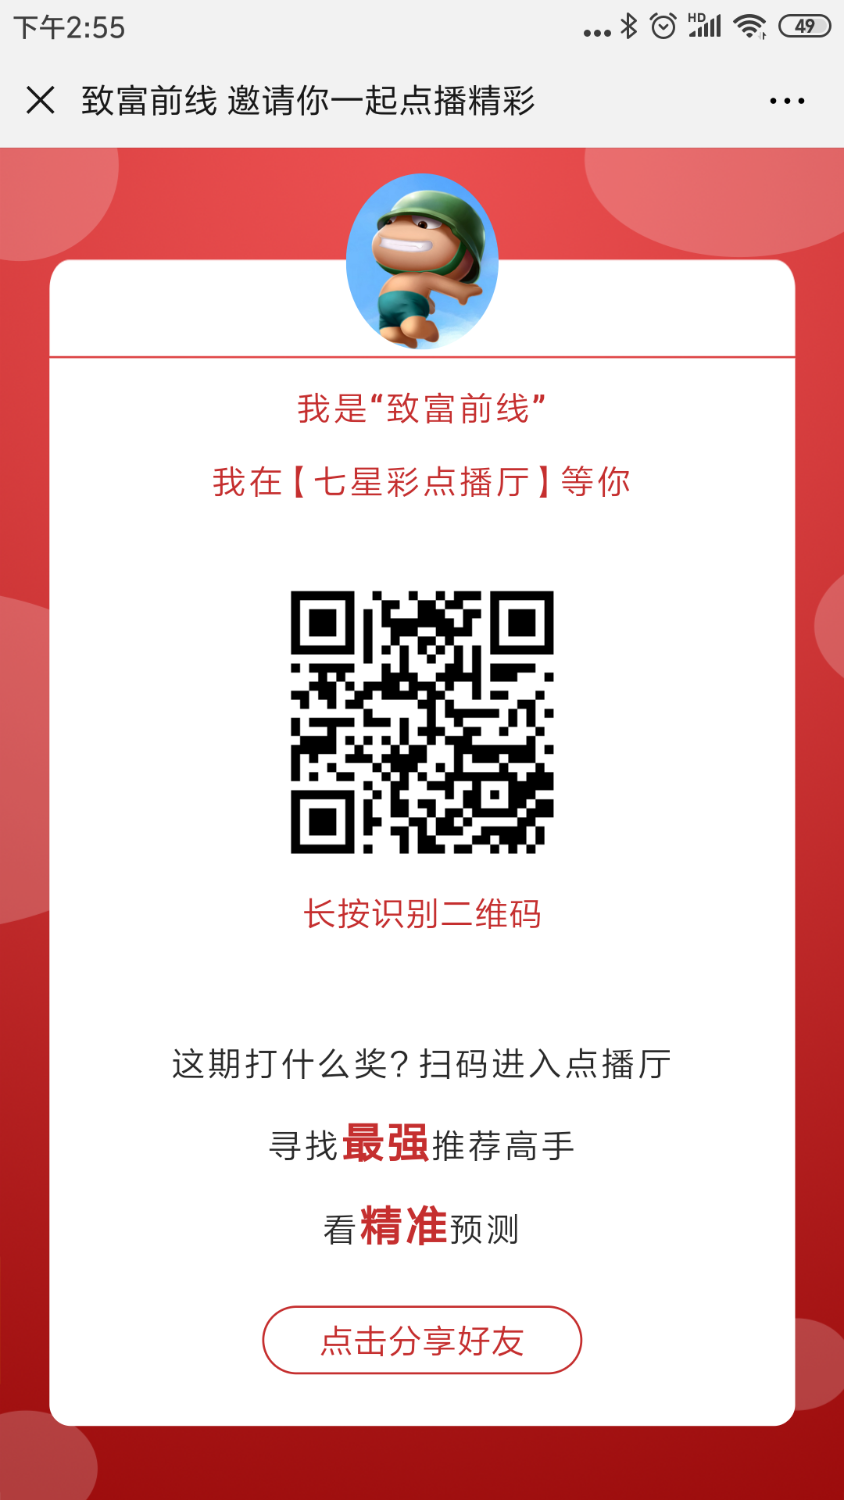 Screenshot_2019-06-17-14-55-38-296_com.tencent.mm.png